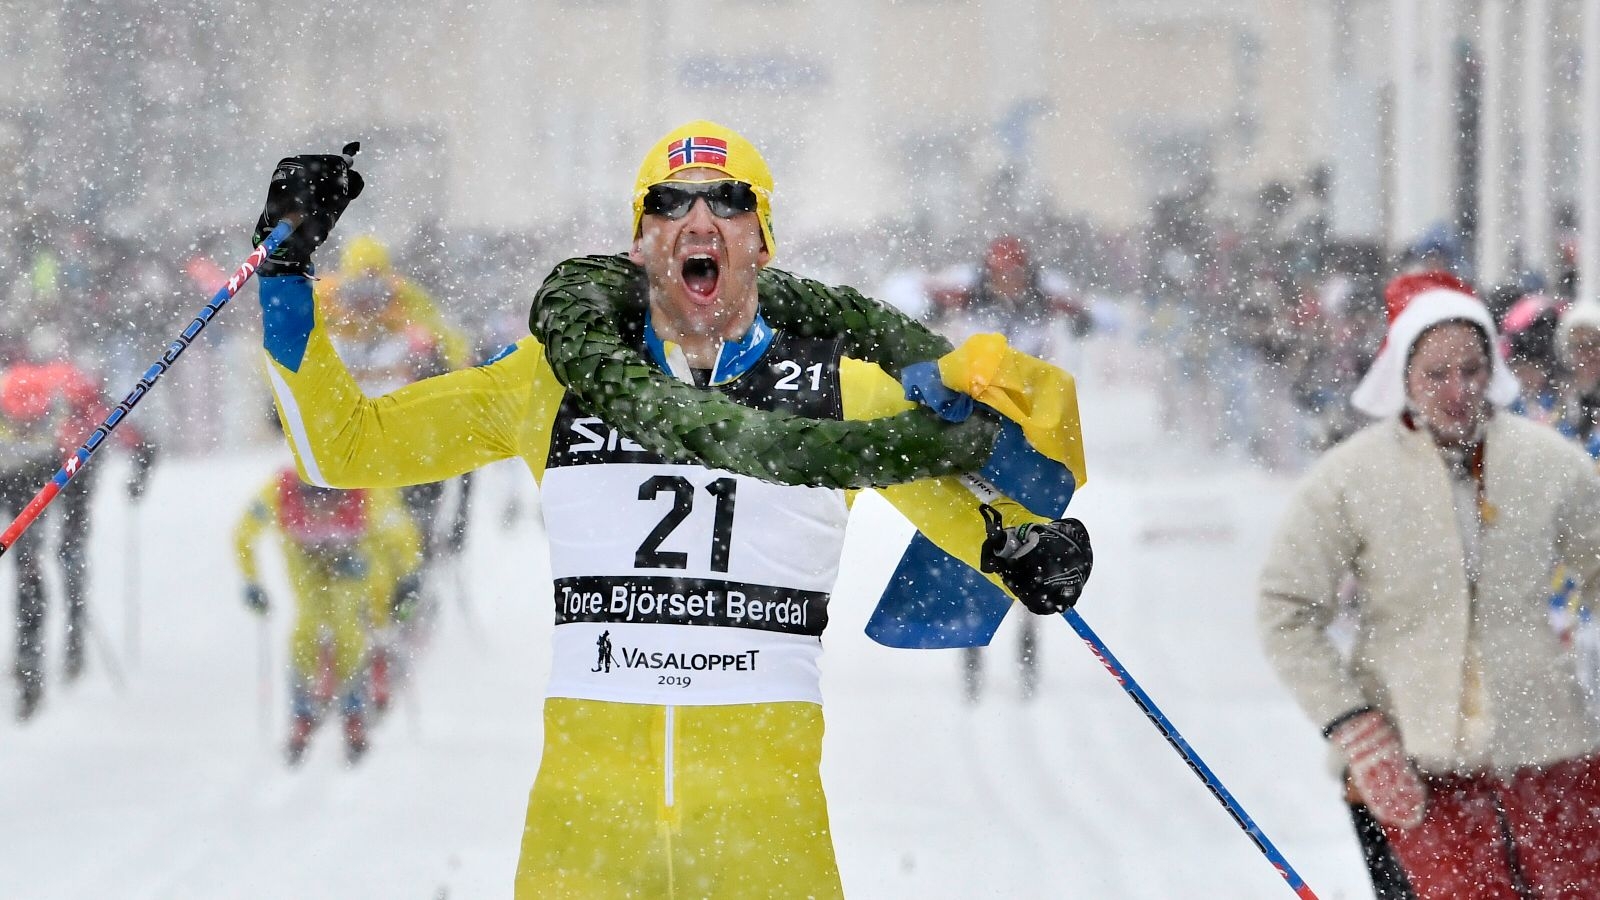 MORA 2019-03-03
Tore Bjørseth Berdal från Norge vinner Vasaloppet 2019. 
Foto Ulf Palm / TT / Kod 9110